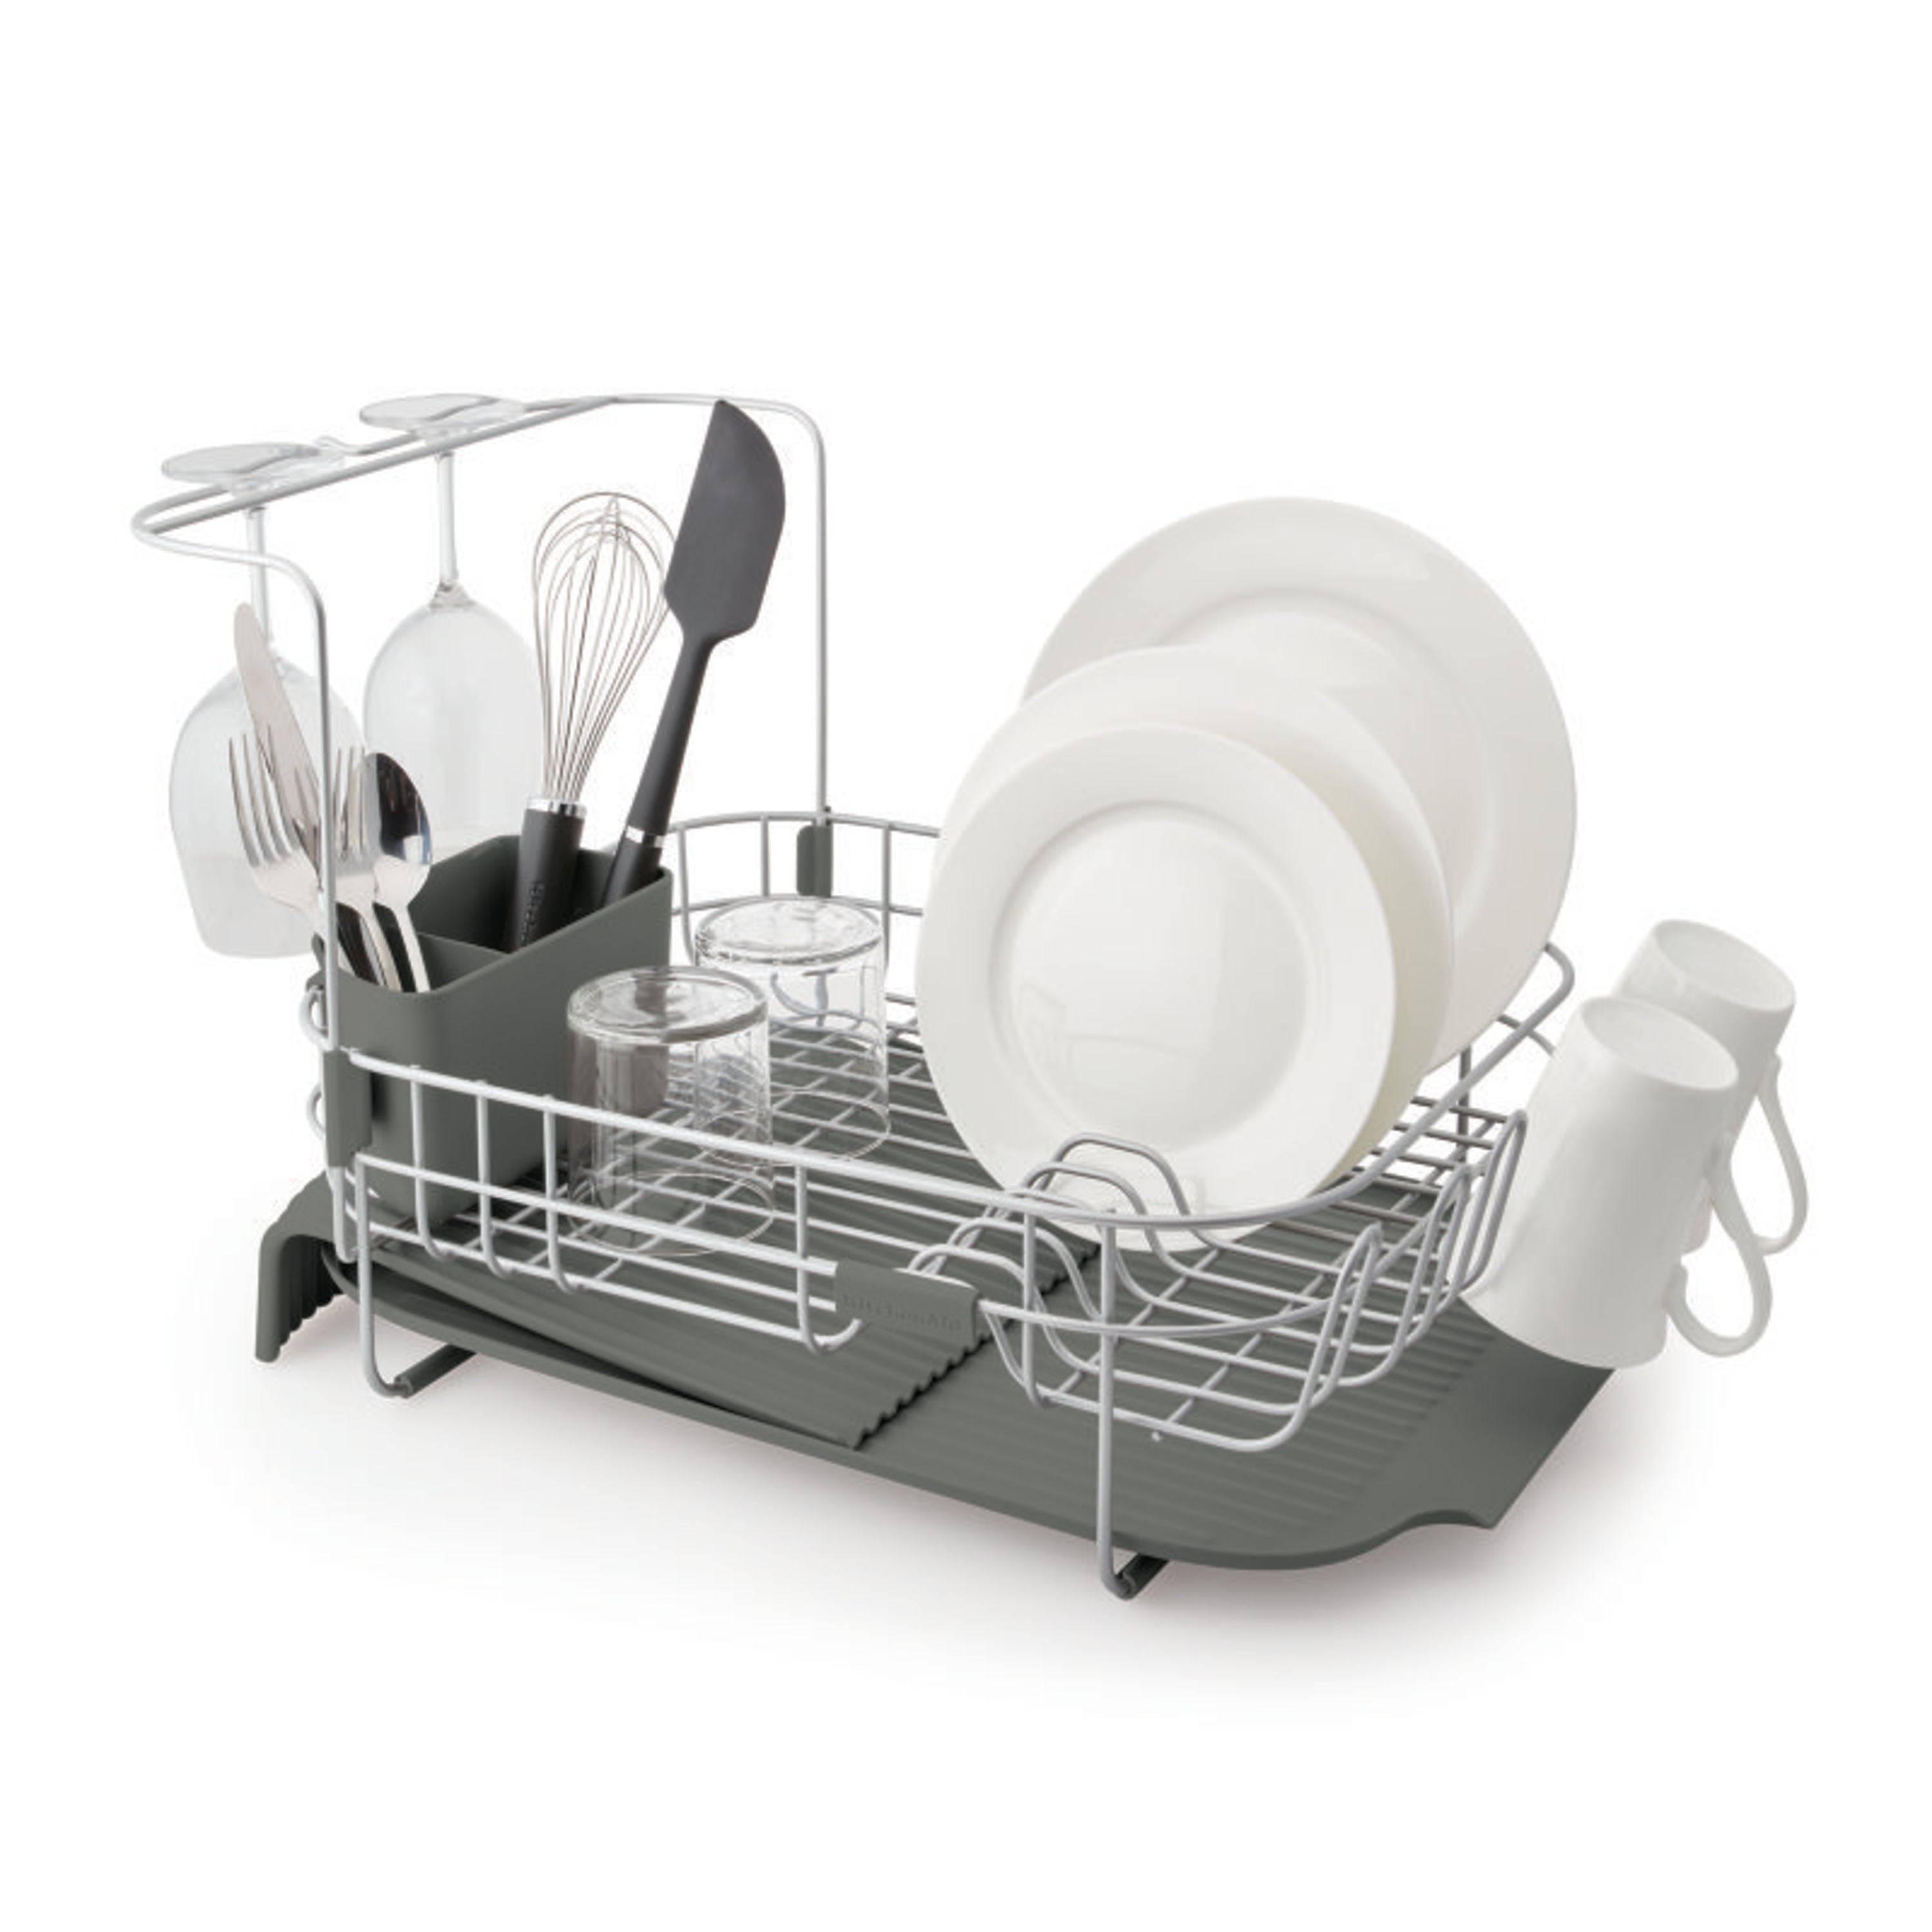 PETXPERT Dish Drying Rack, Expandable Dish Rack for Kitchen